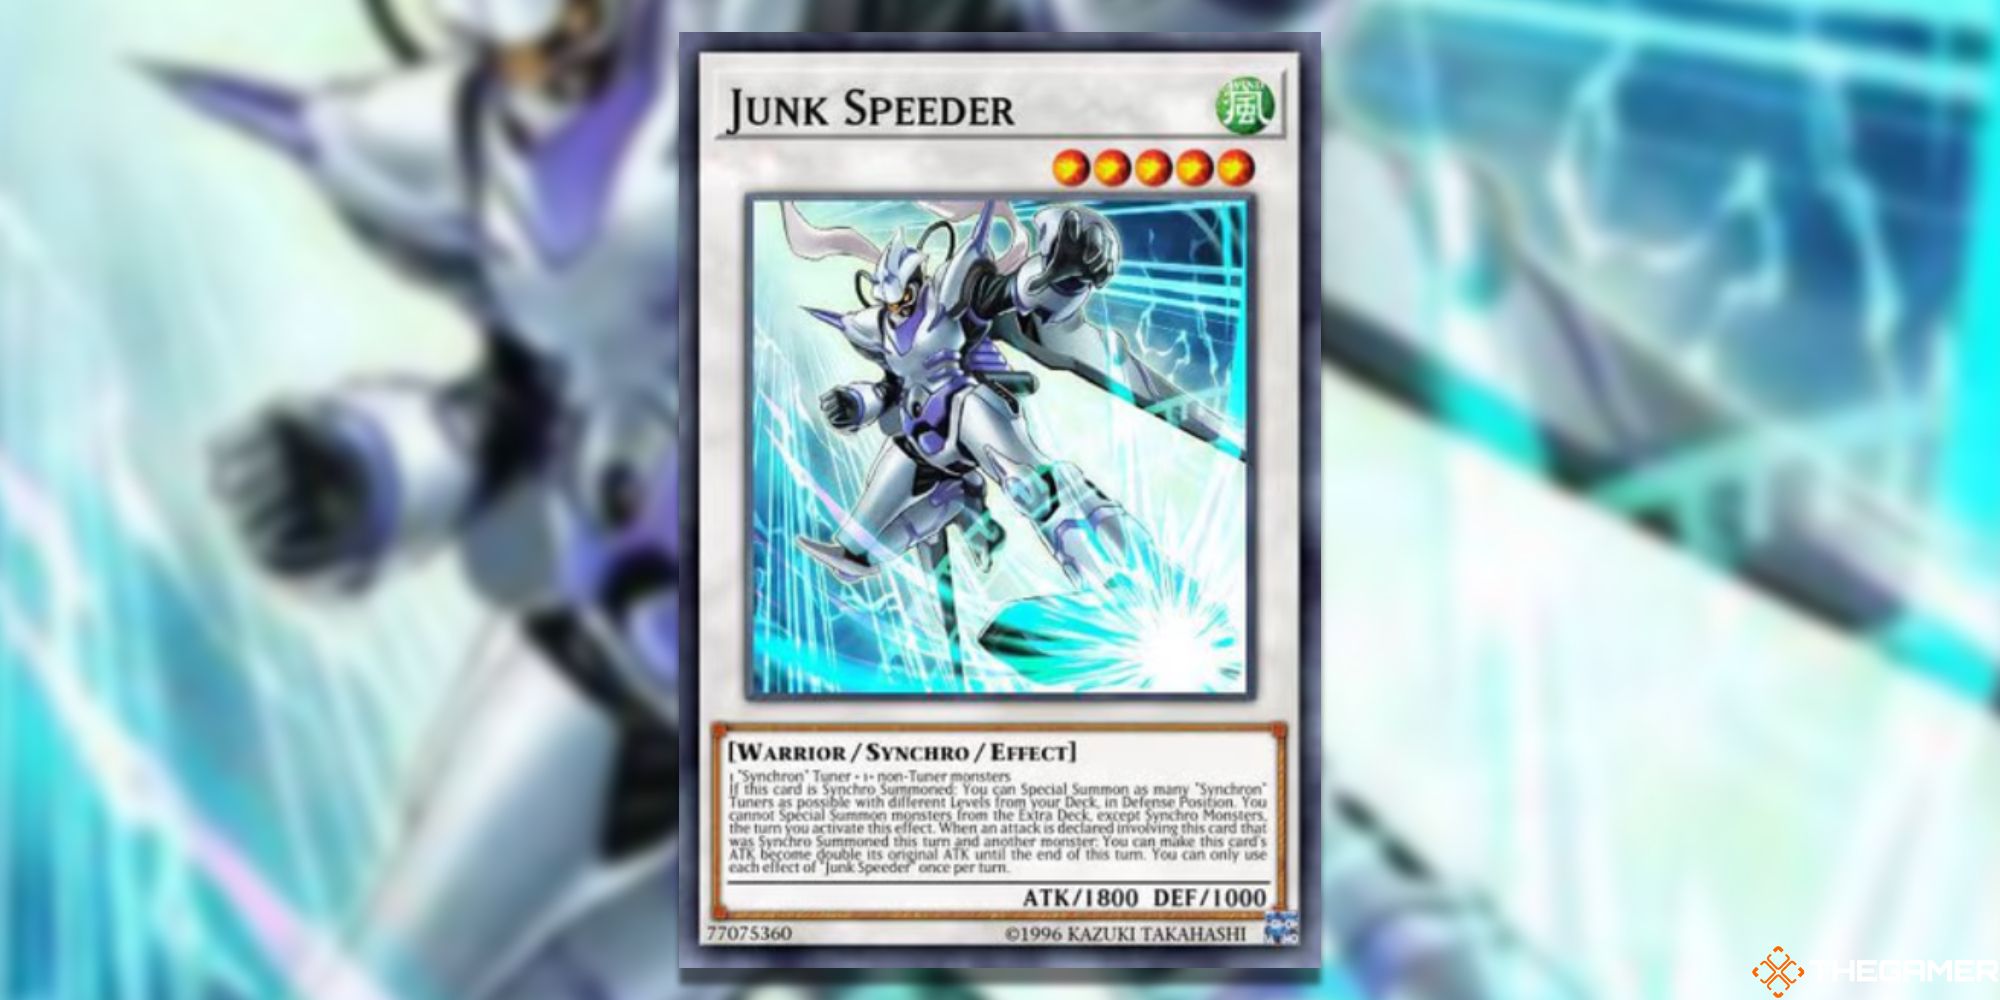 Yu-Gi-Oh! Junk Speeder on blurred background